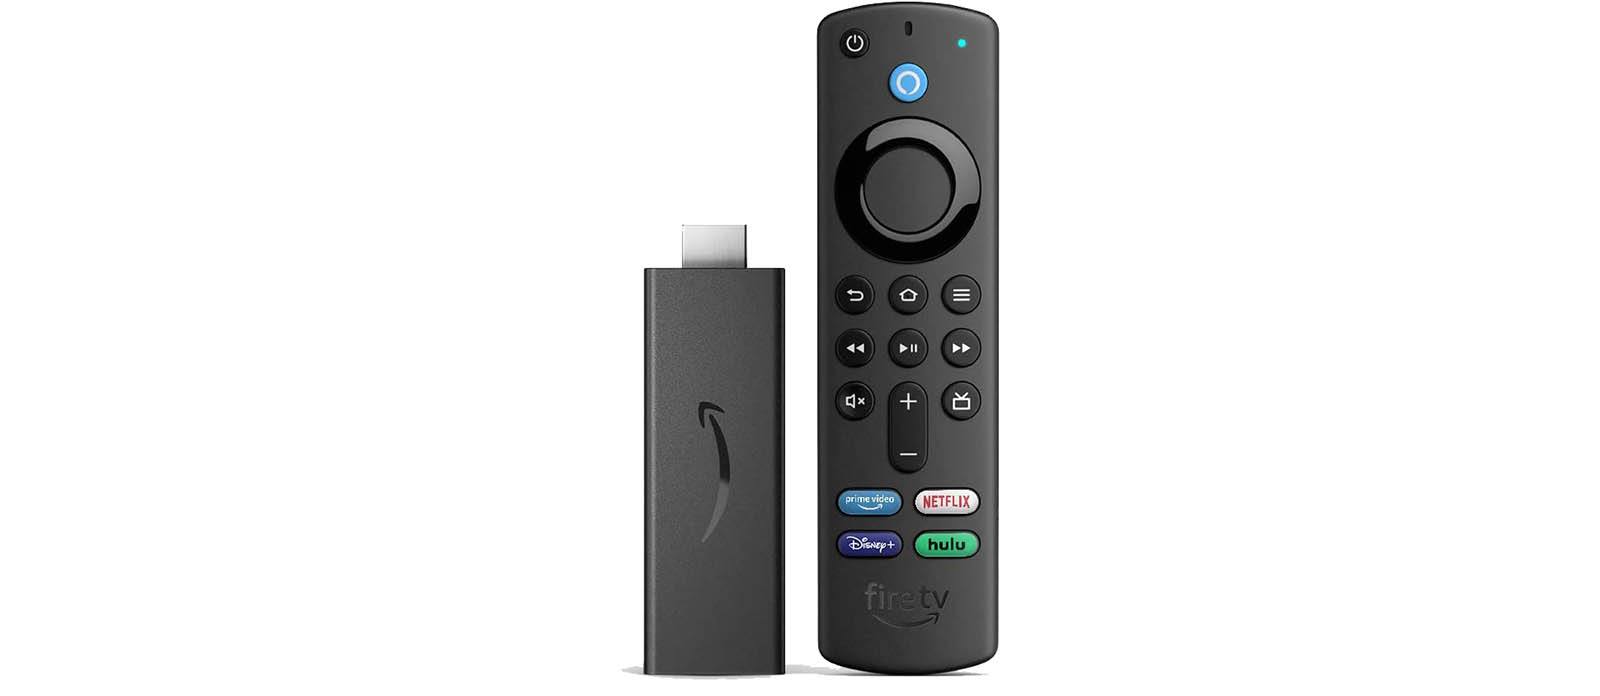 Deal Alert! Amazon’s Fire TV Stick 4K is On Sale!